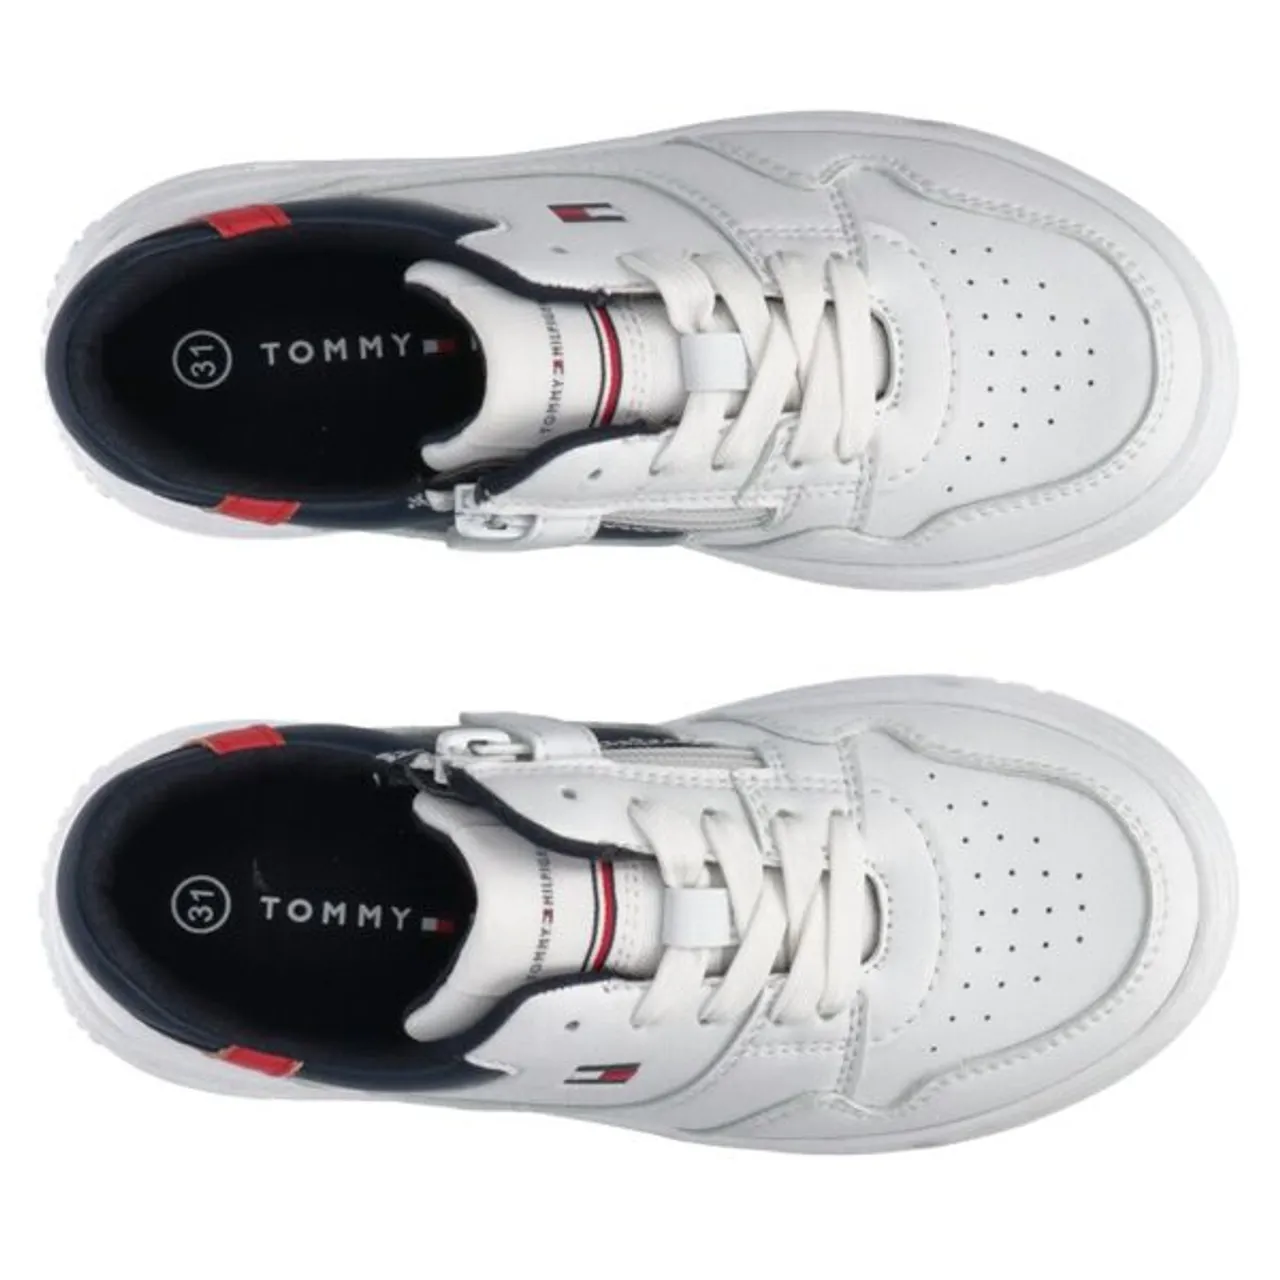 Sneaker TOMMY HILFIGER "LOW CUT LACE-UP SNEAKER" Gr. 41, weiß (white) Kinder Schuhe Sneaker